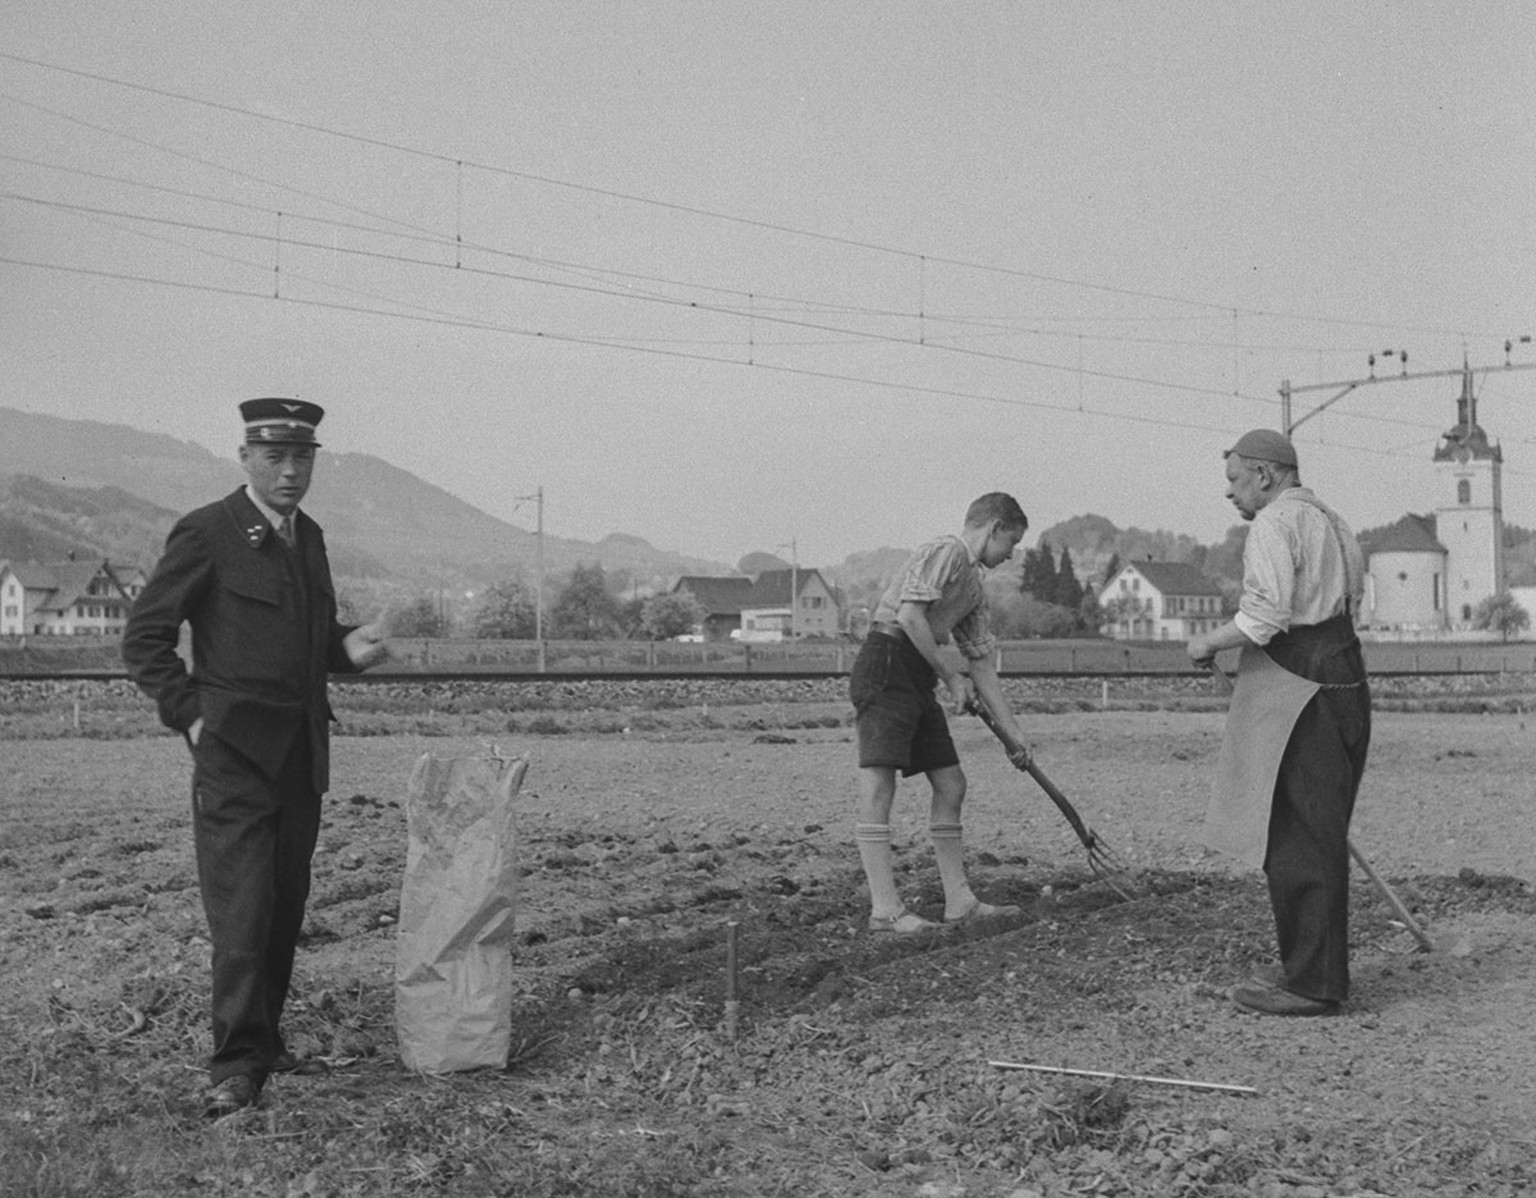 Le personnel ferroviaire s’adonne au maraîchage près de Freienbach, canton de Schwytz, mai 1942.
https://www.sbbarchiv.ch/detail.aspx?ID=268530